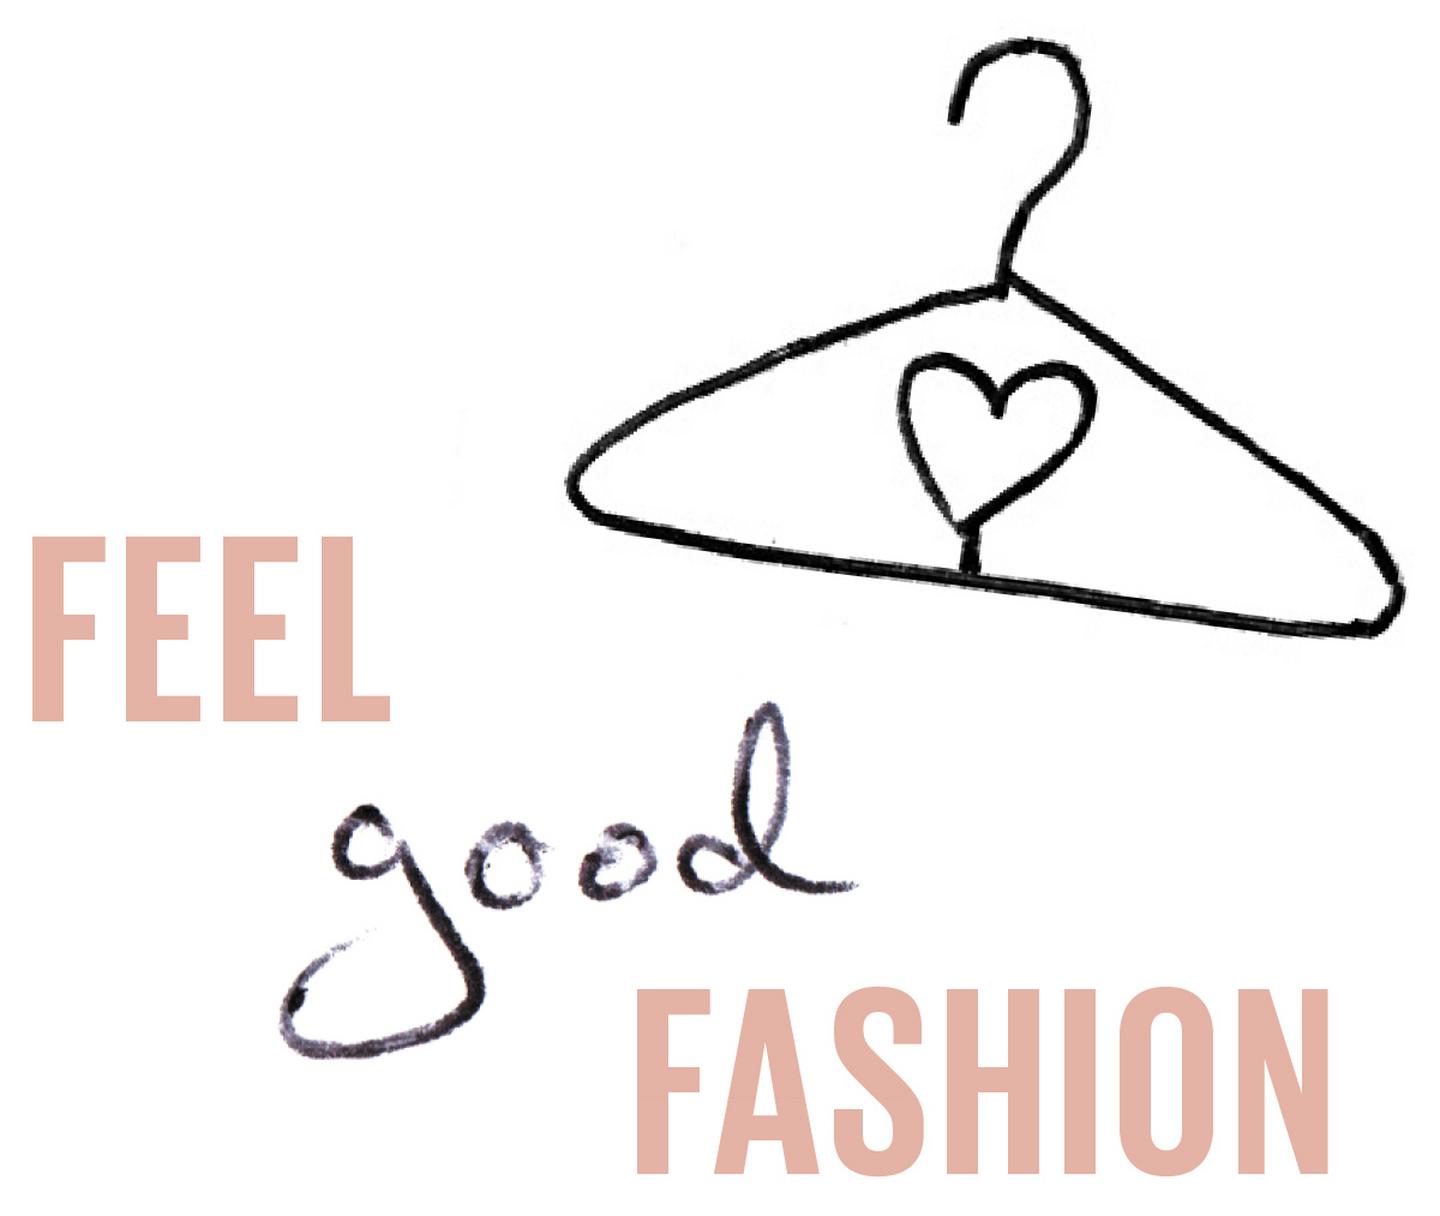 Feel good fashion.